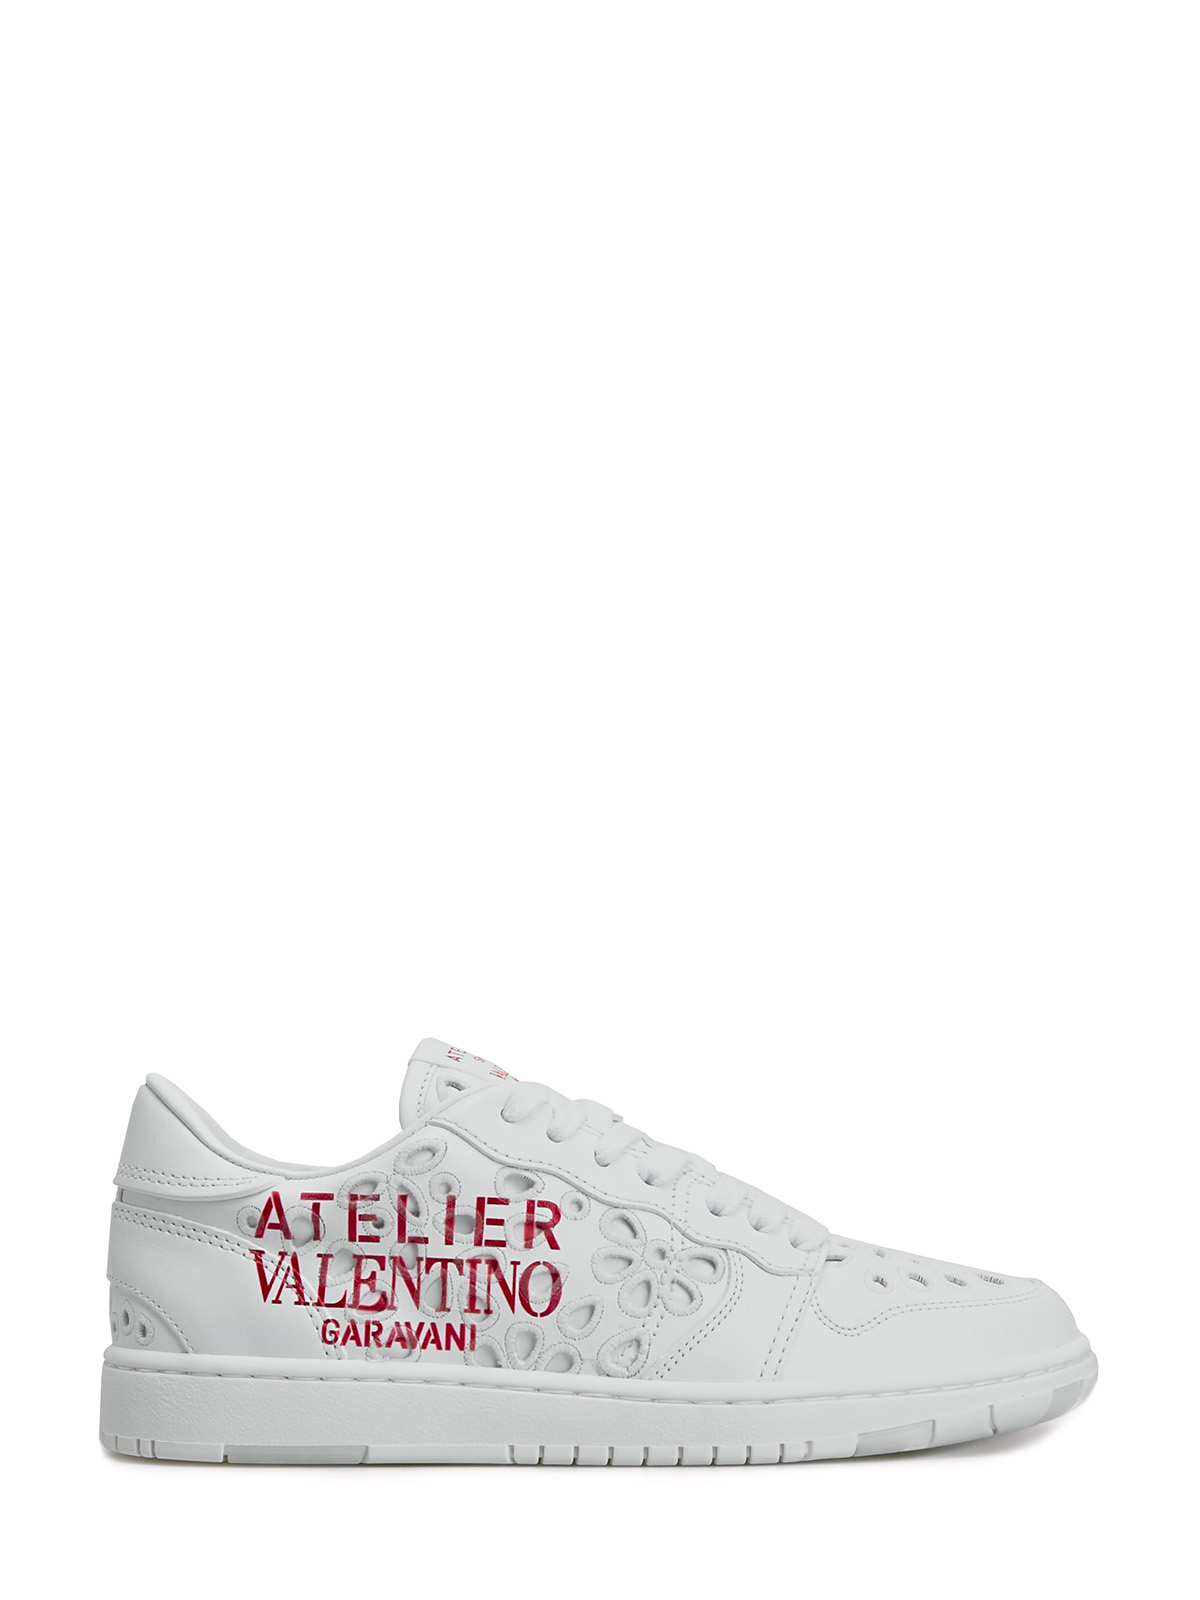 Кожаные кроссовки Atelier Shoes 08 San Gallo Edition VALENTINO GARAVANI, цвет белый, размер 36;36.5;37;37.5;38;38.5;39;40;39.5